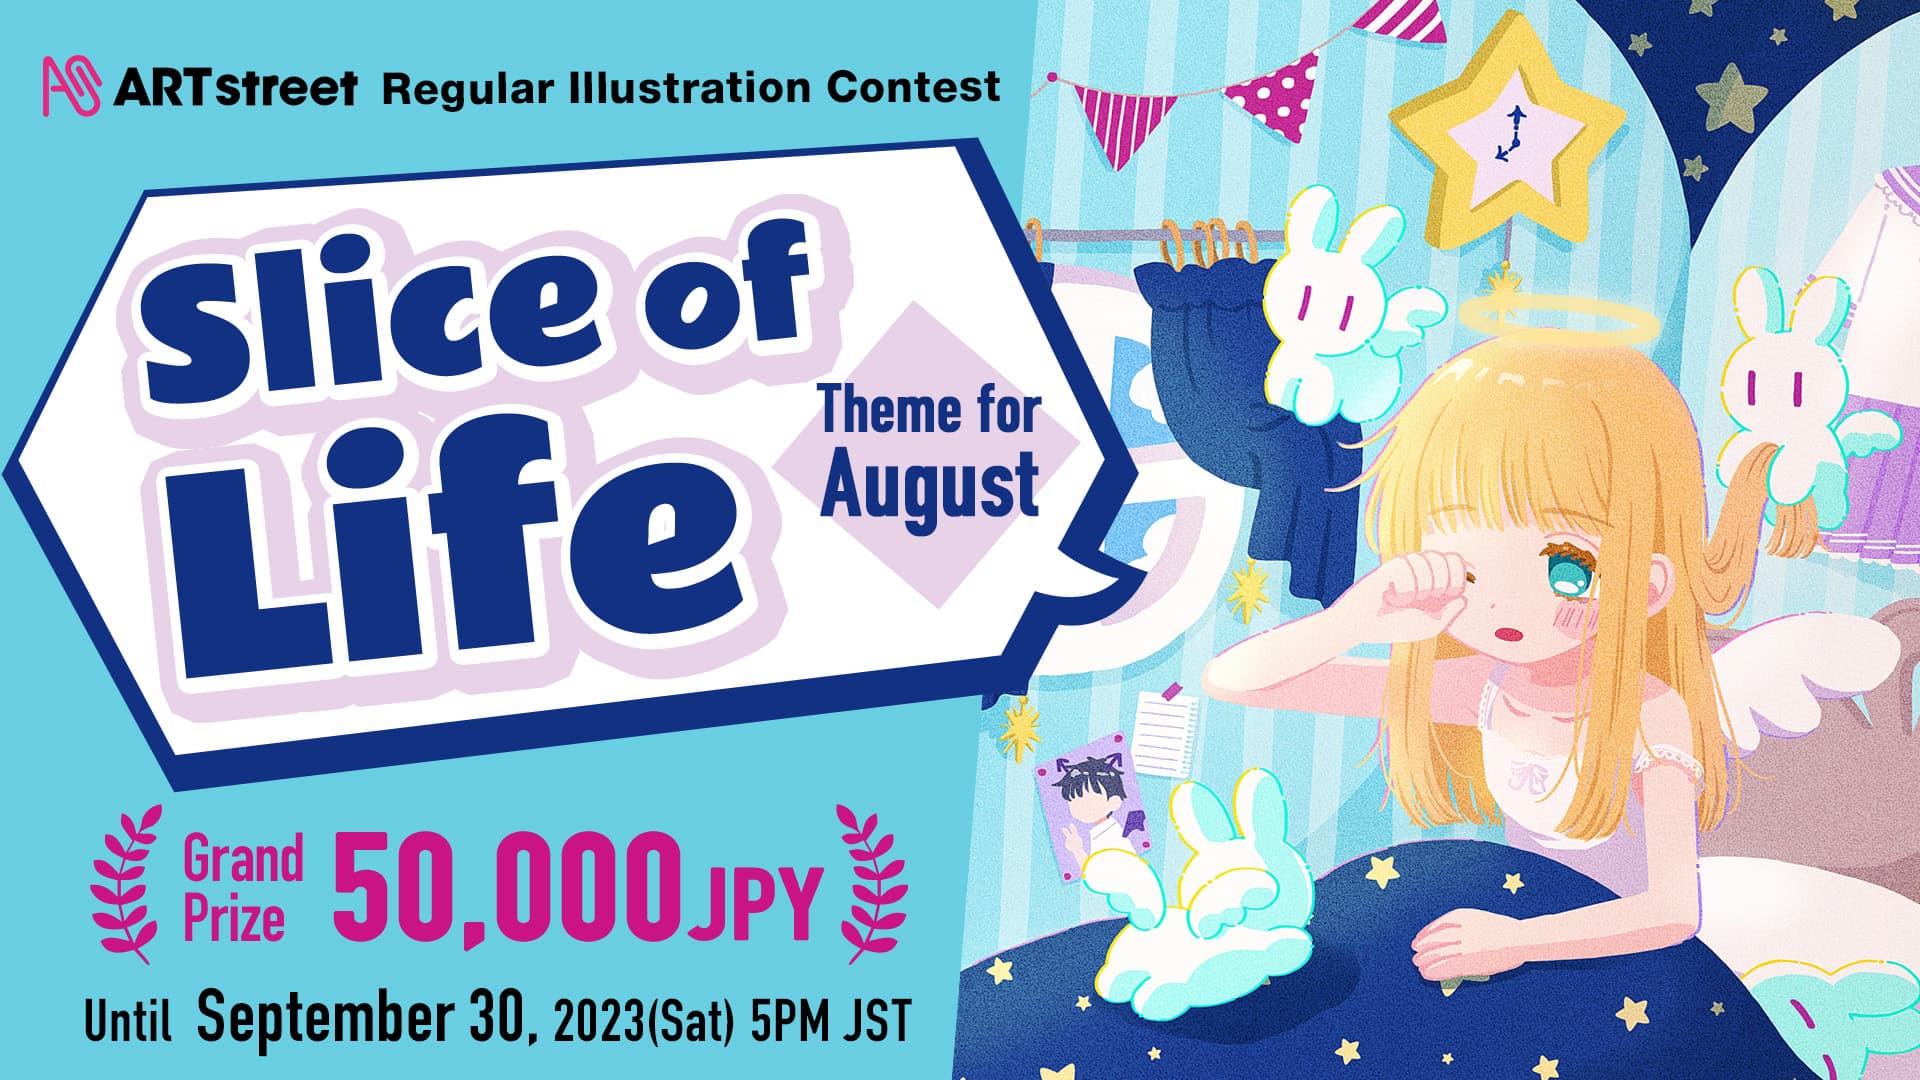 ART street Regular Illustration Contest Theme for August: Slice of Life